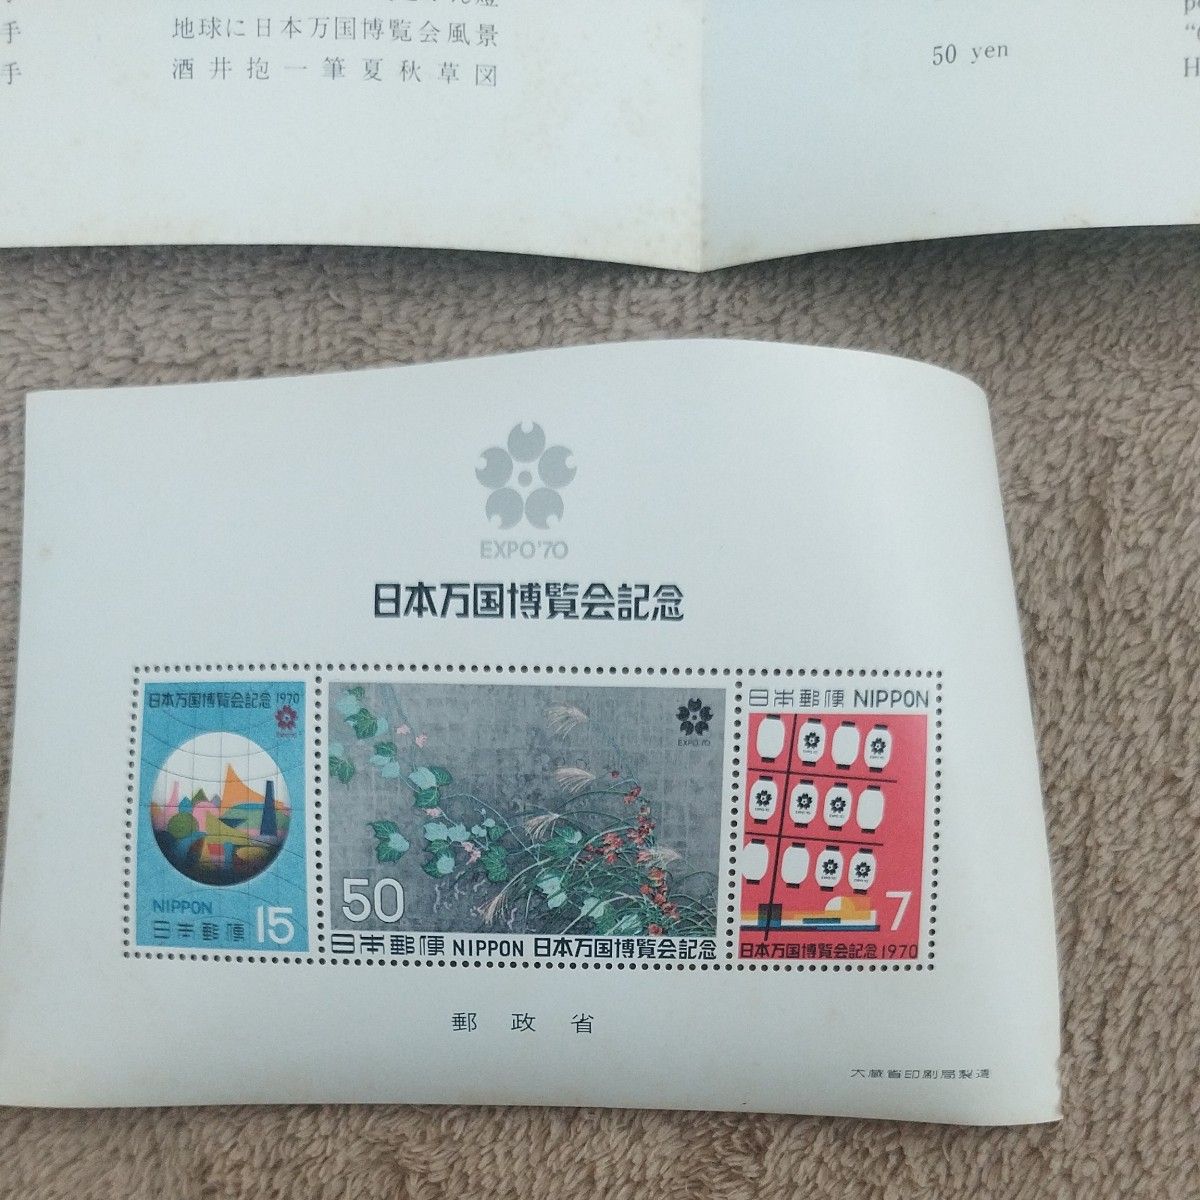 日本万国博覧会記念 日本万国博 小型シート 郵政省　1970年 万博